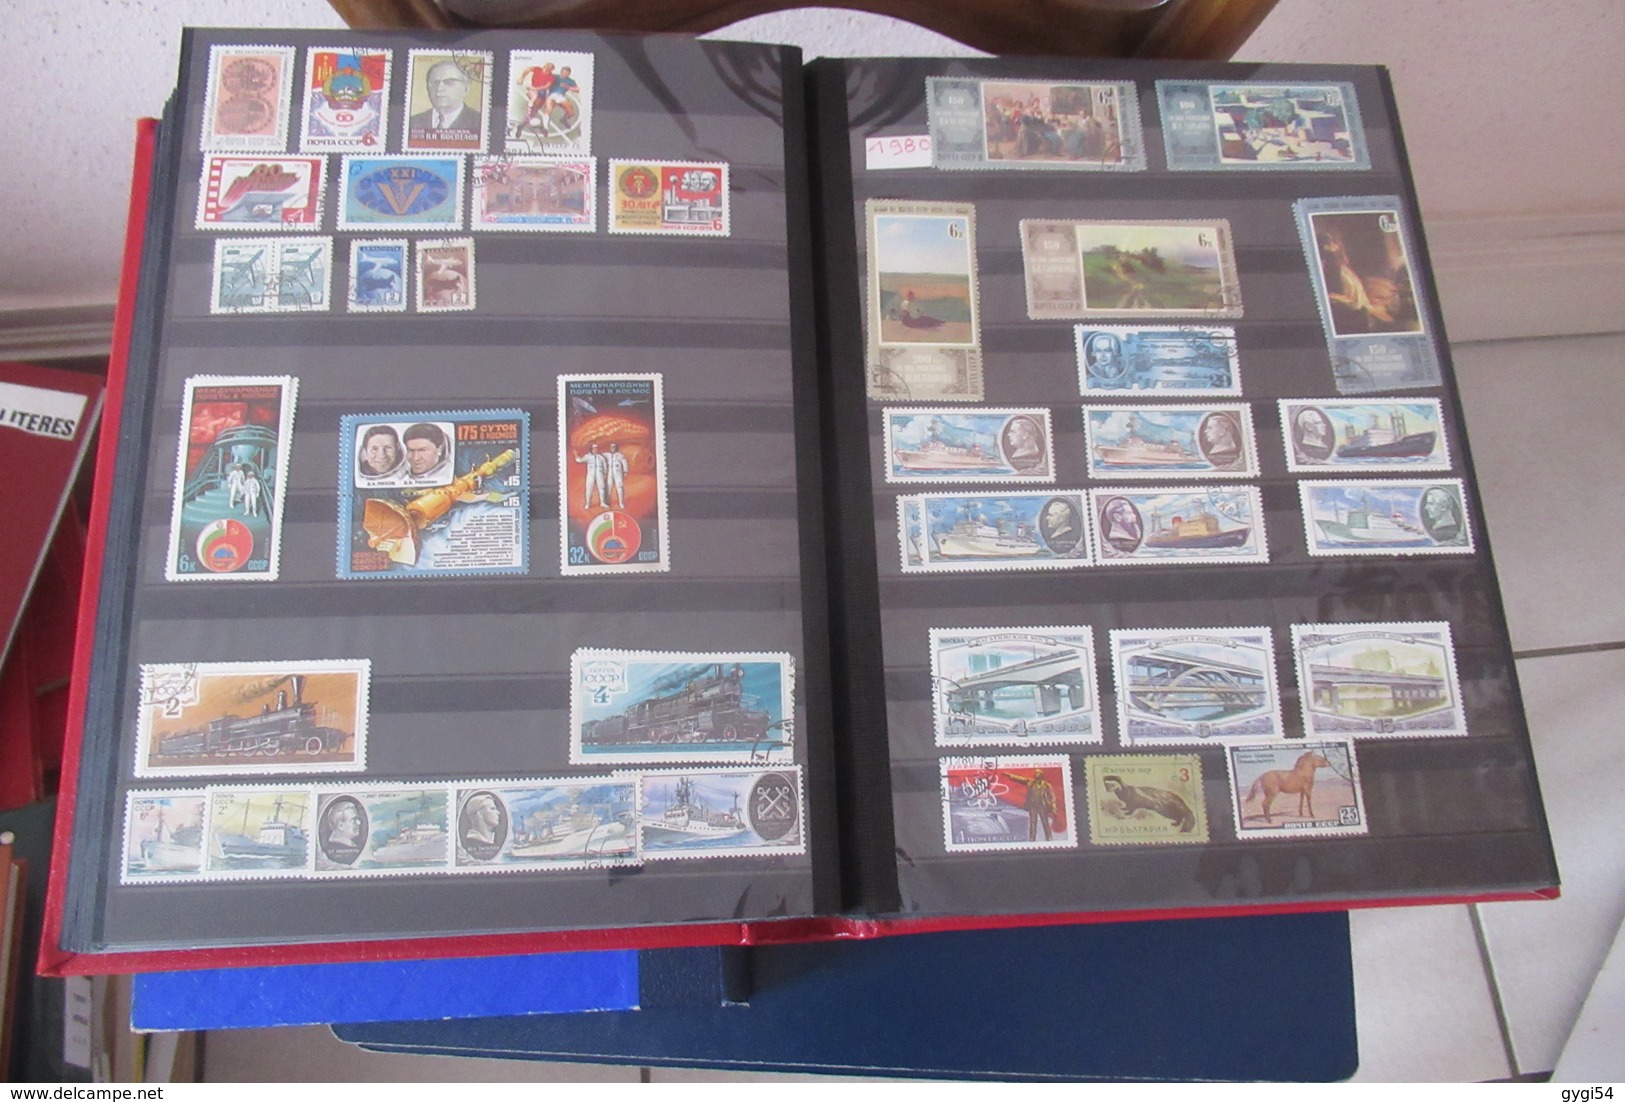 Collection Générale  Canada à Zaïre  Russie 1970 - 1988   ( magnifique classeur de 64 p )  74  scans